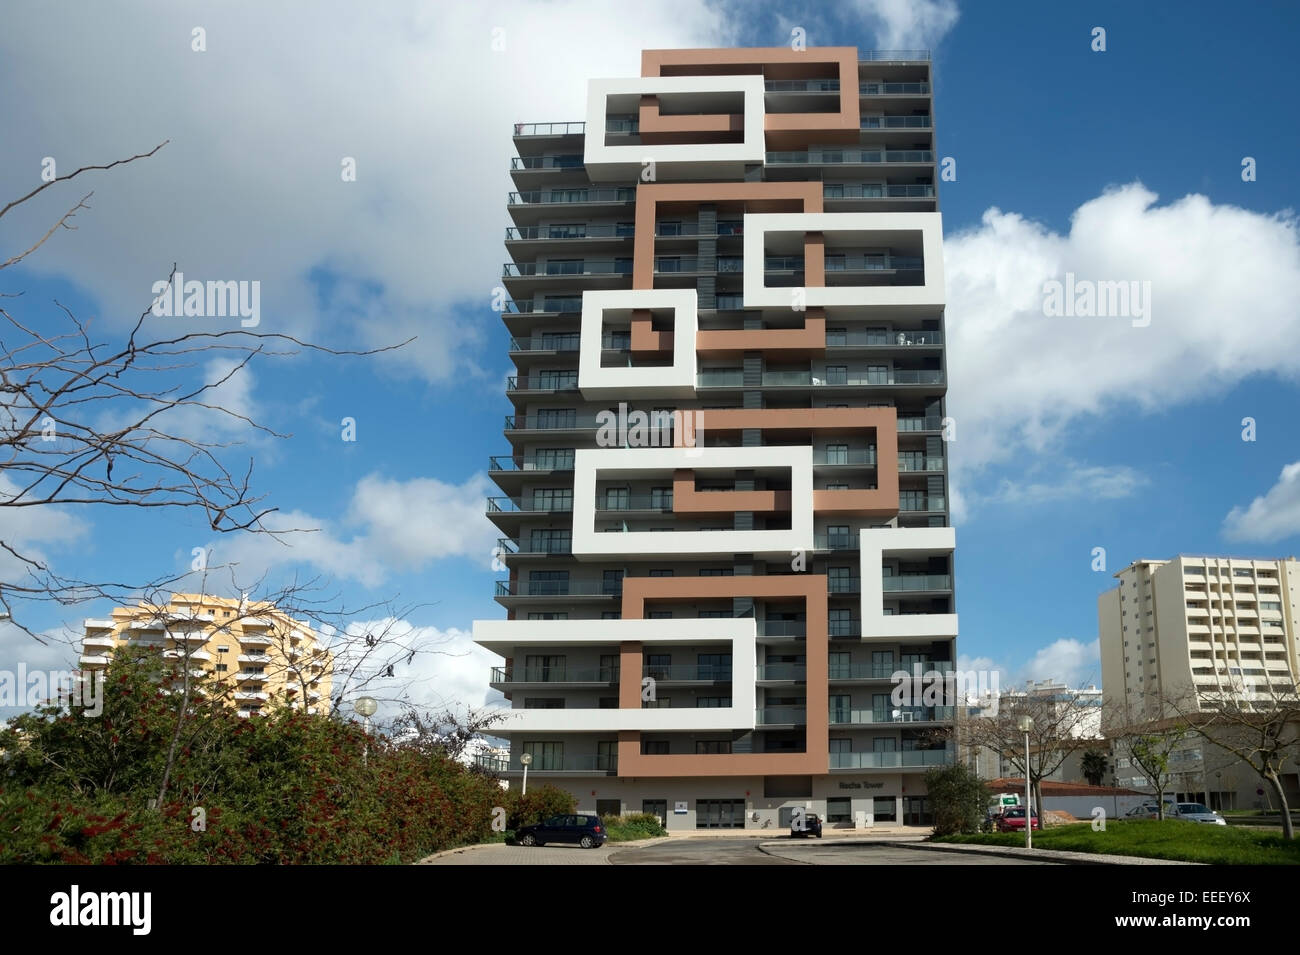 El moderno diseño del bloque de apartamentos Torre Rocha en Praia da rocha, Algarve, Portugal Foto de stock